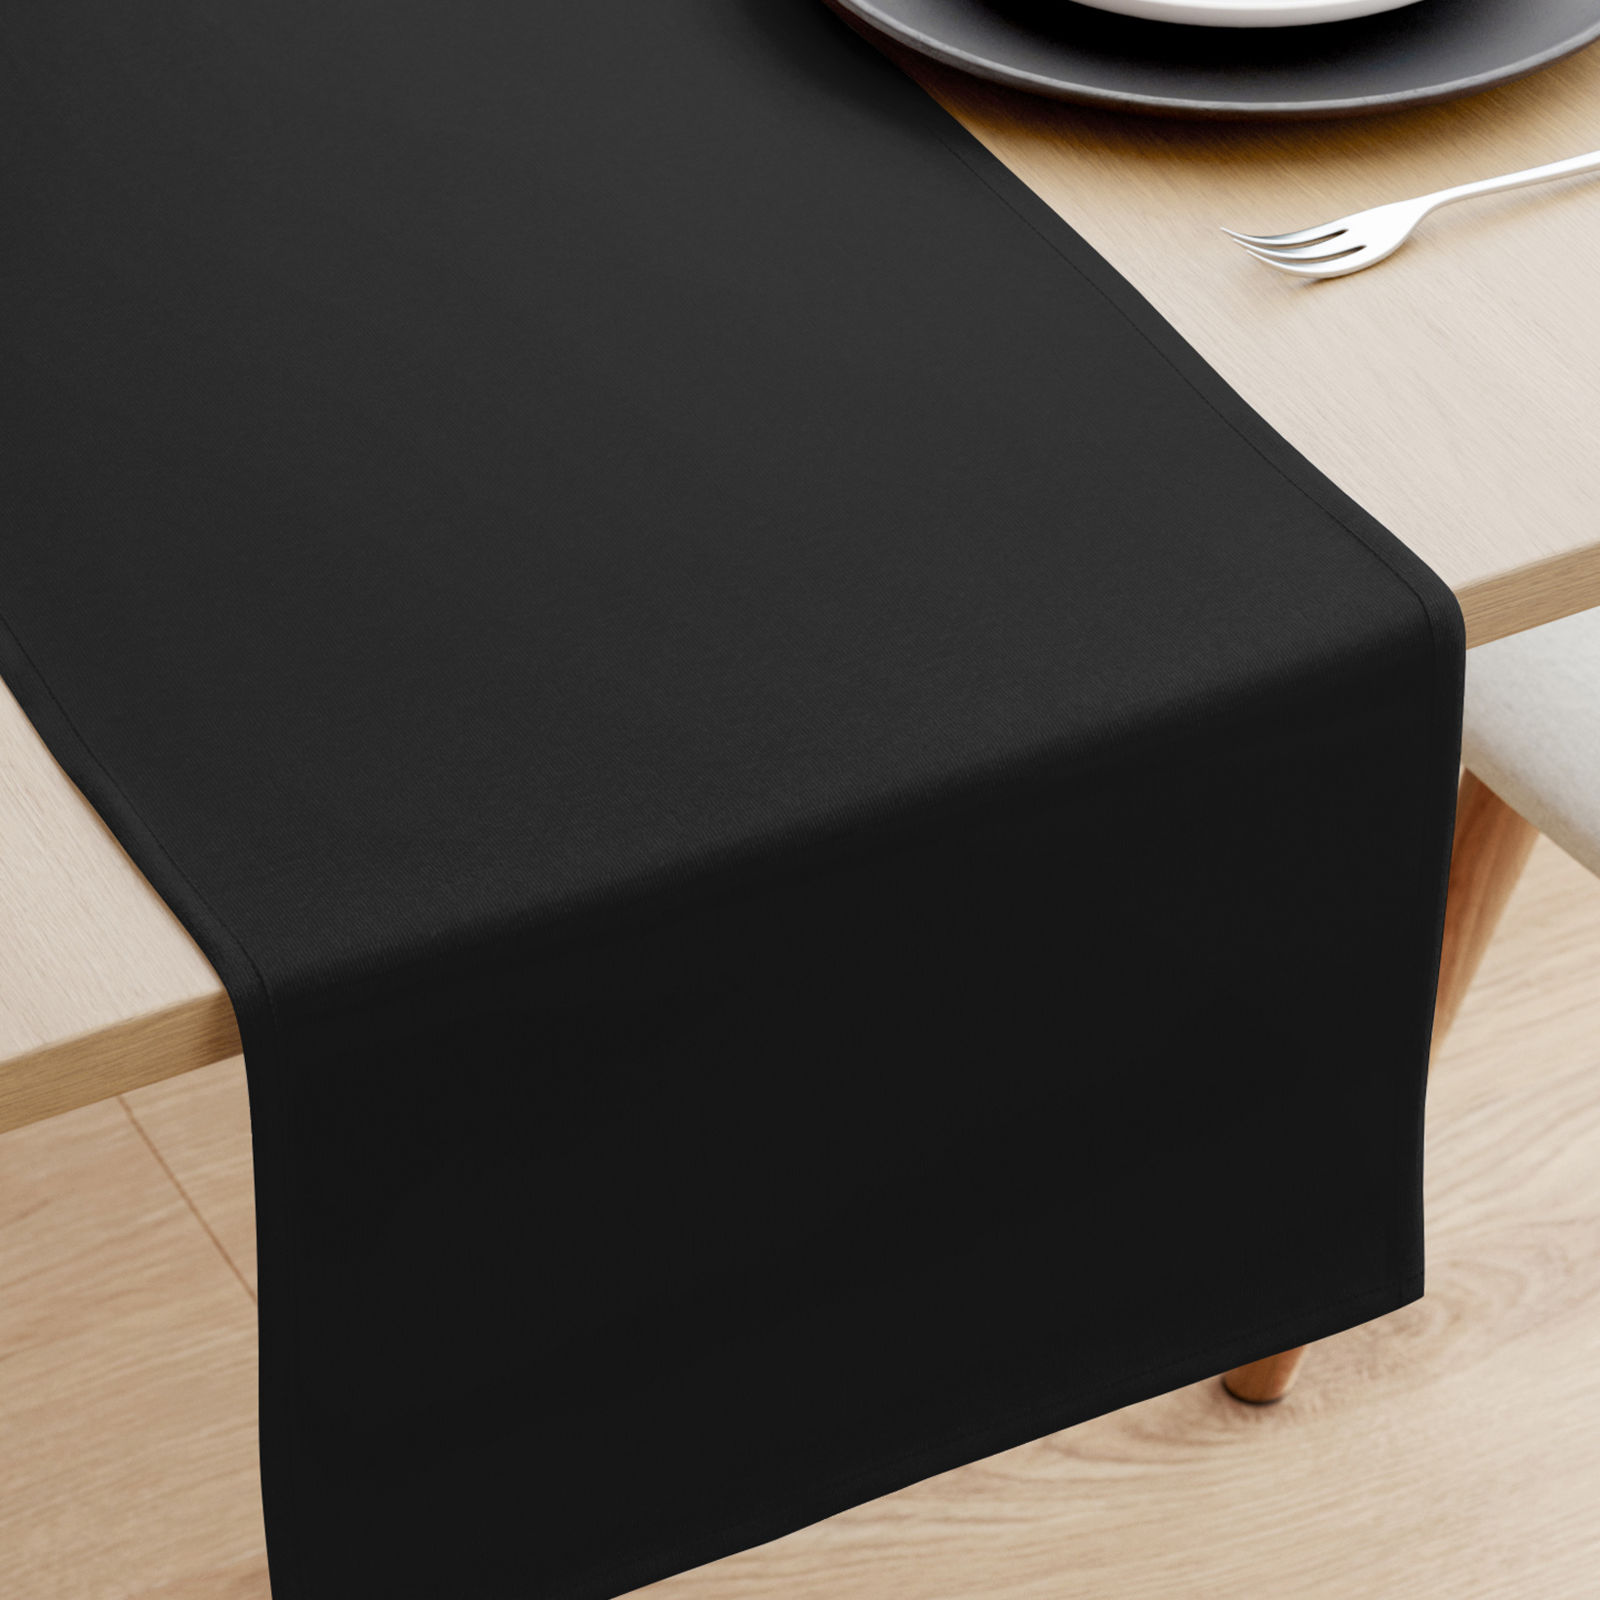 Bieżnik na stół z płótna bawełnianego - czarny